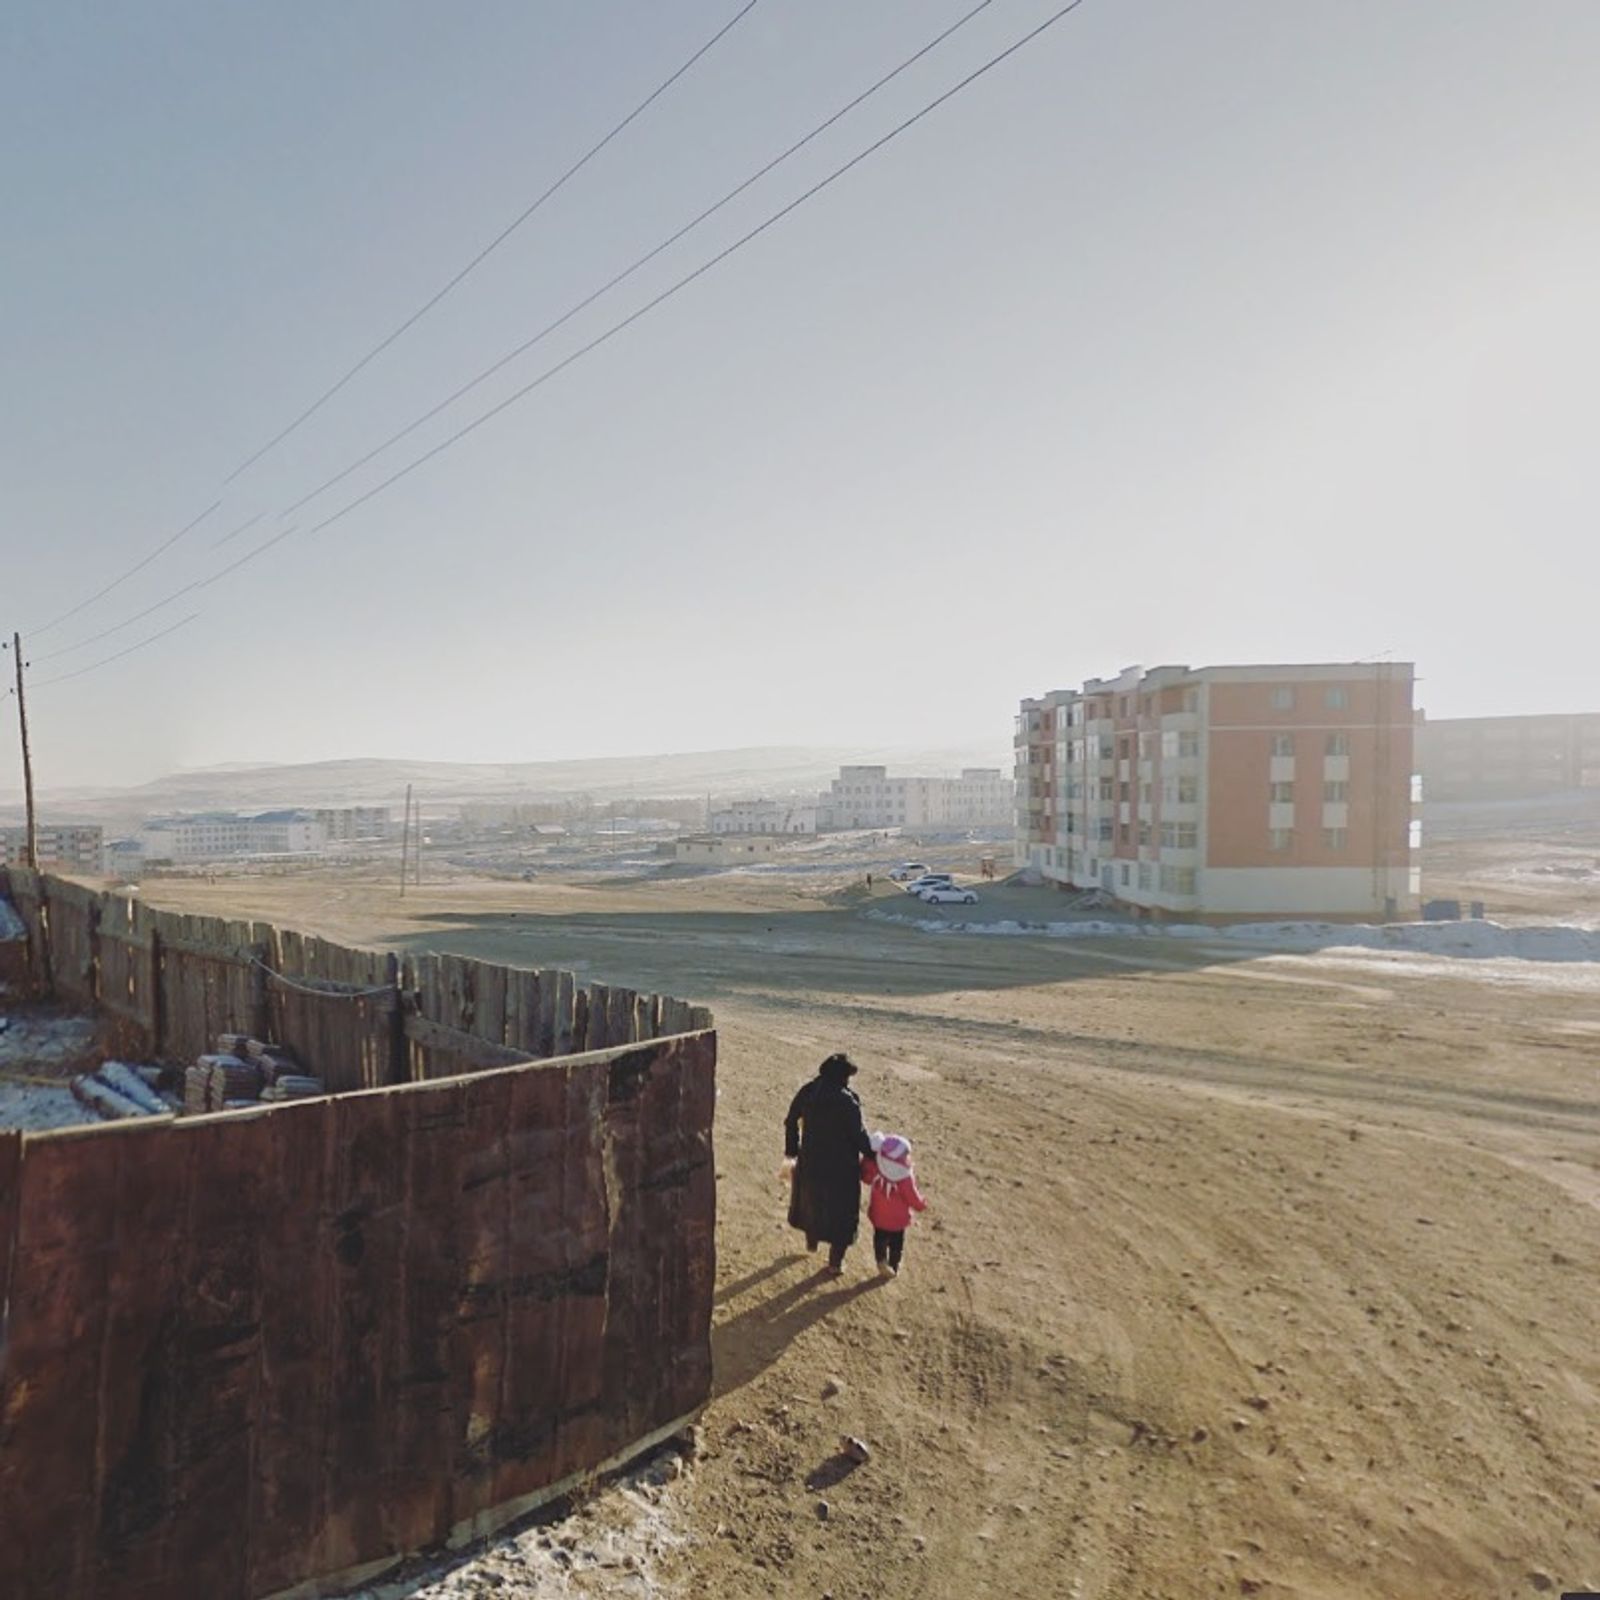 © Jacqui Kenny - Ulaanbaater, Mongolia